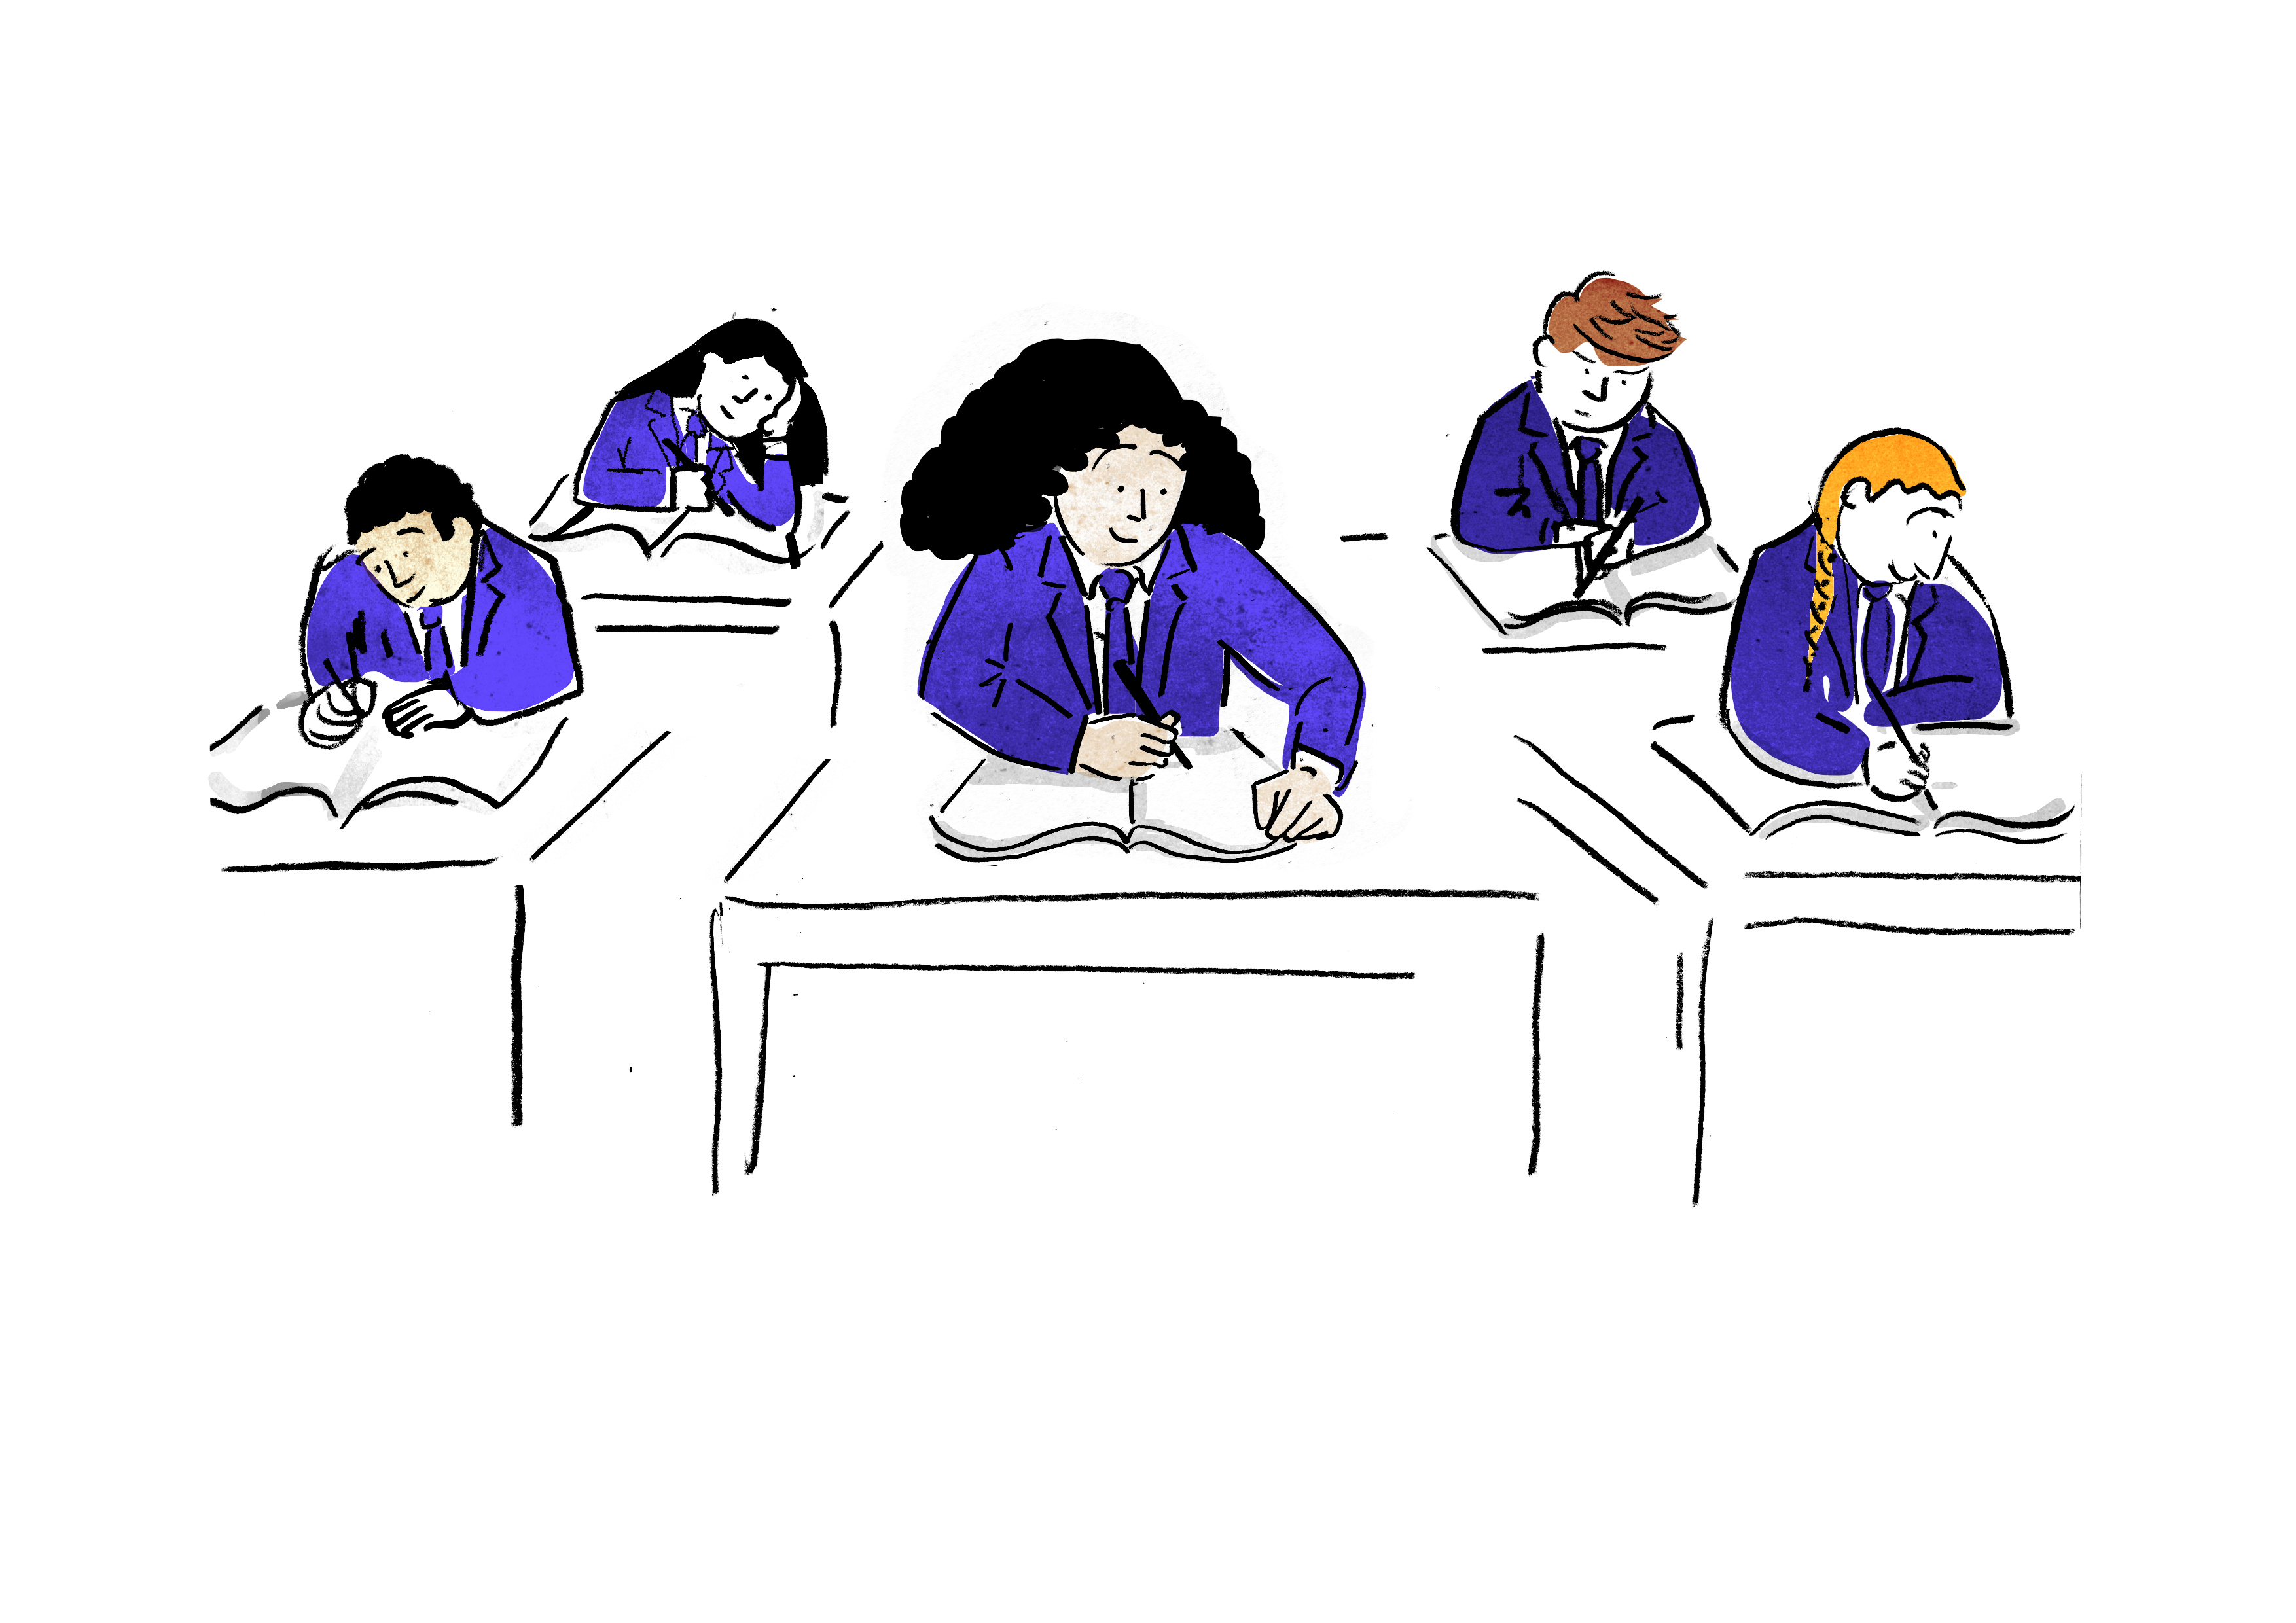 illustration-teenagers-studying-on-desks